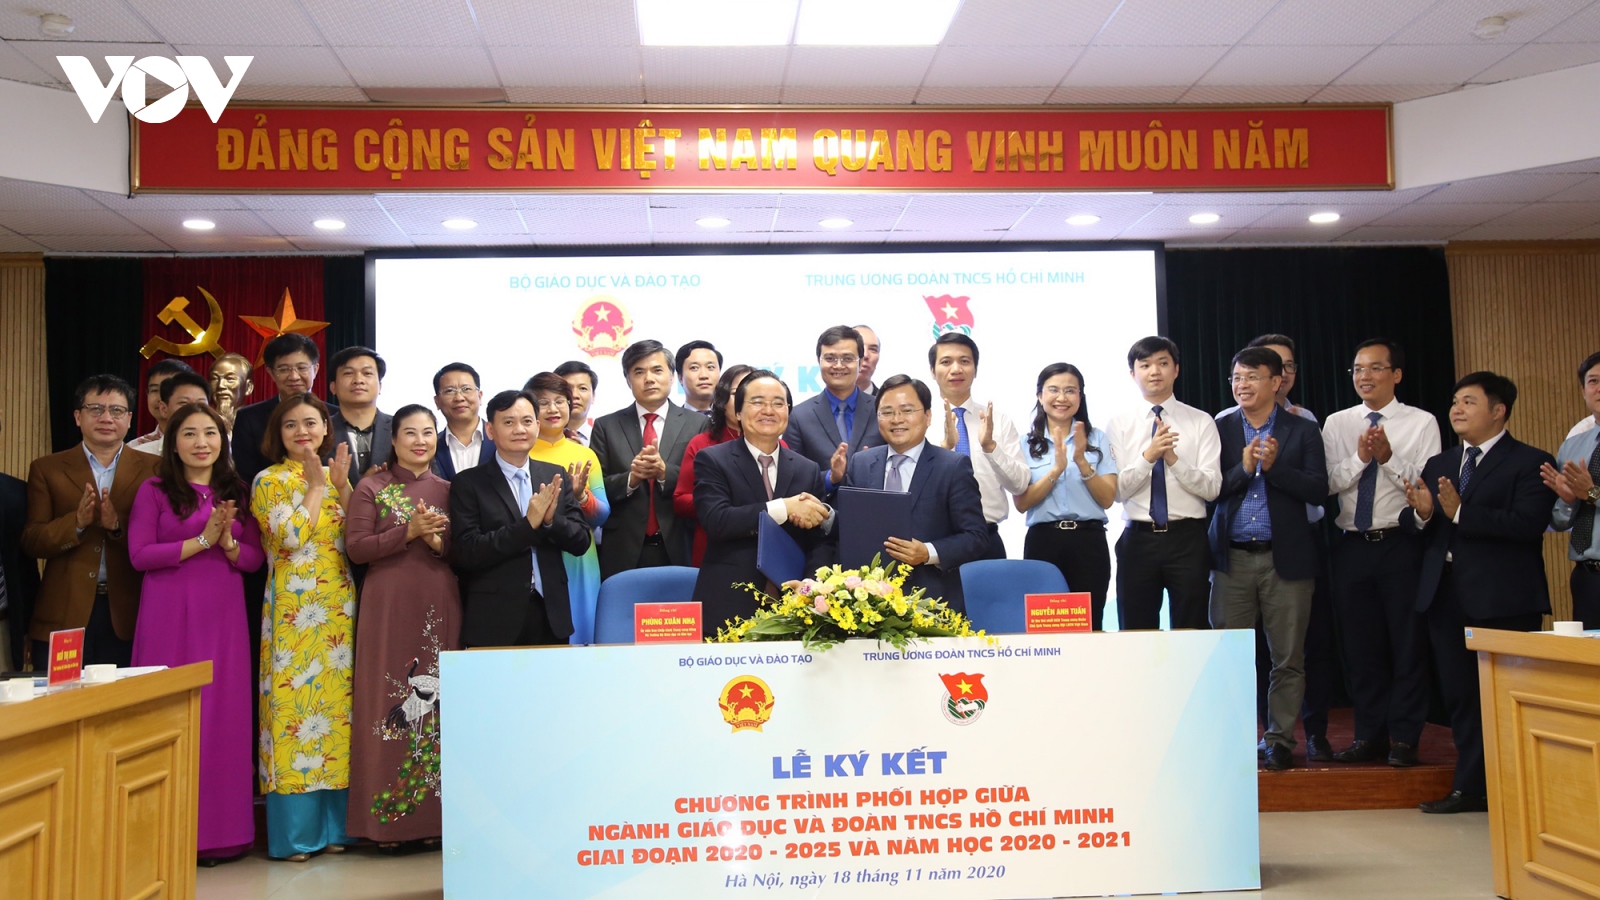 Ký kết chương trình phối hợp giữa ngành Giáo dục và Đoàn TNCS Hồ Chí Minh